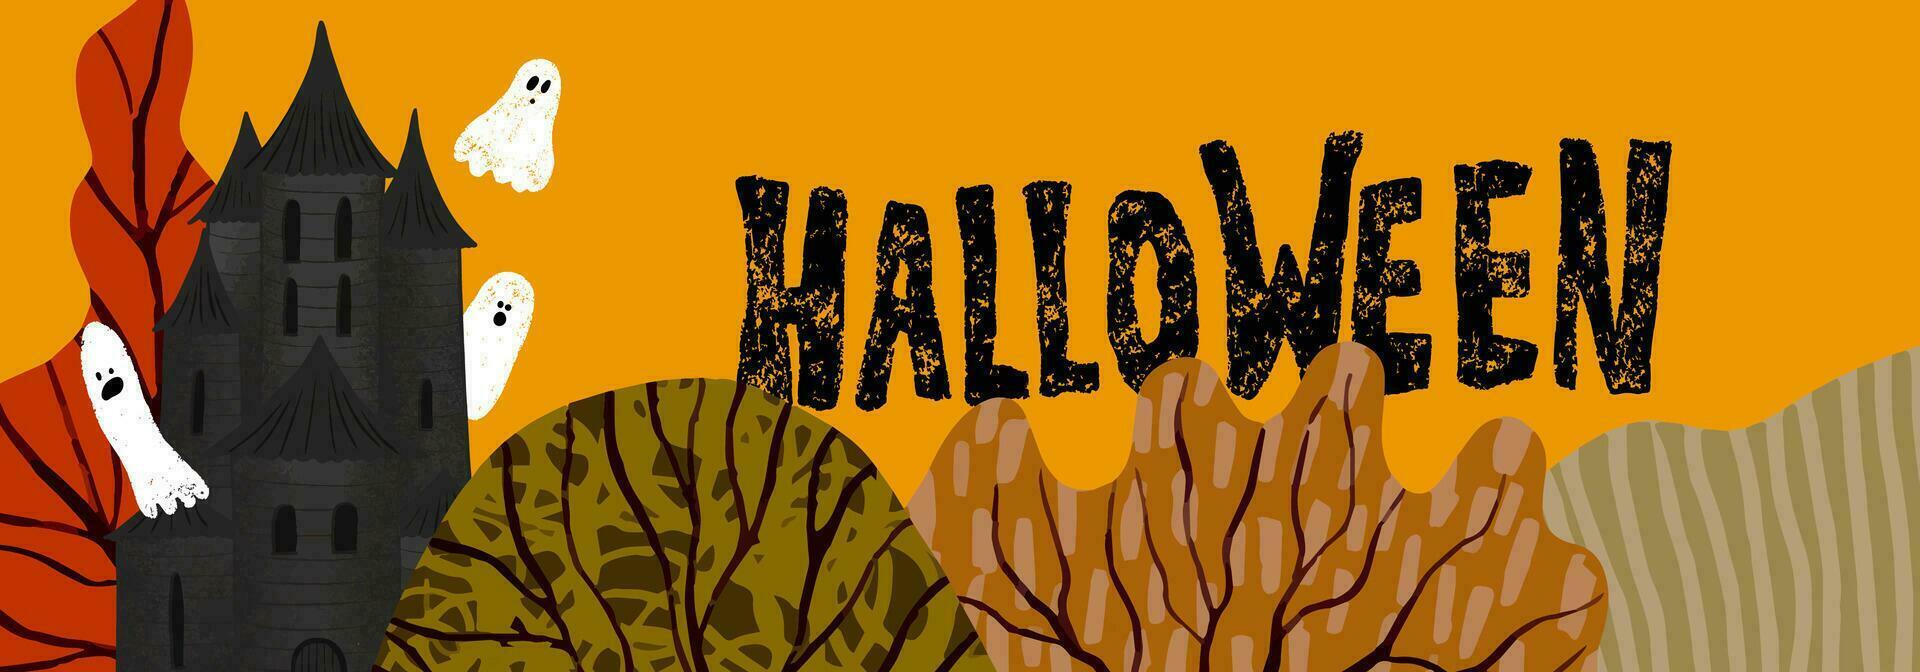 Banner zum Halloween mit Haus von Geister, Wald und Halloween Kreide Beschriftung auf Orange Hintergrund. Hand gezeichnet Illustration vektor